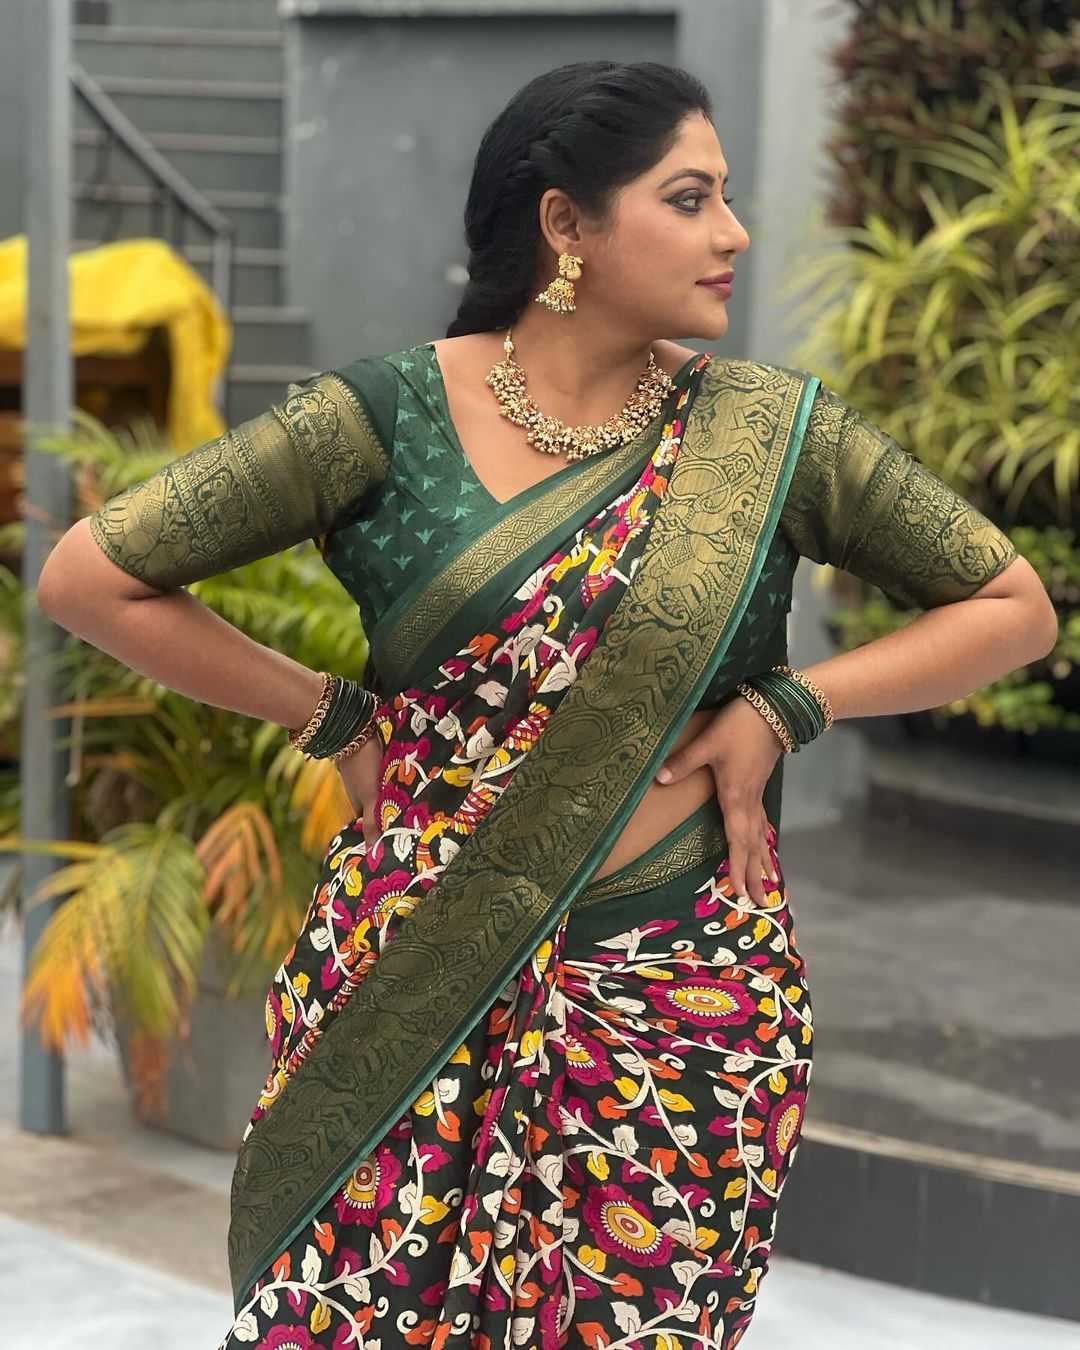 Tamil tv actress reshma pasupuleti hot photos in green saree ...